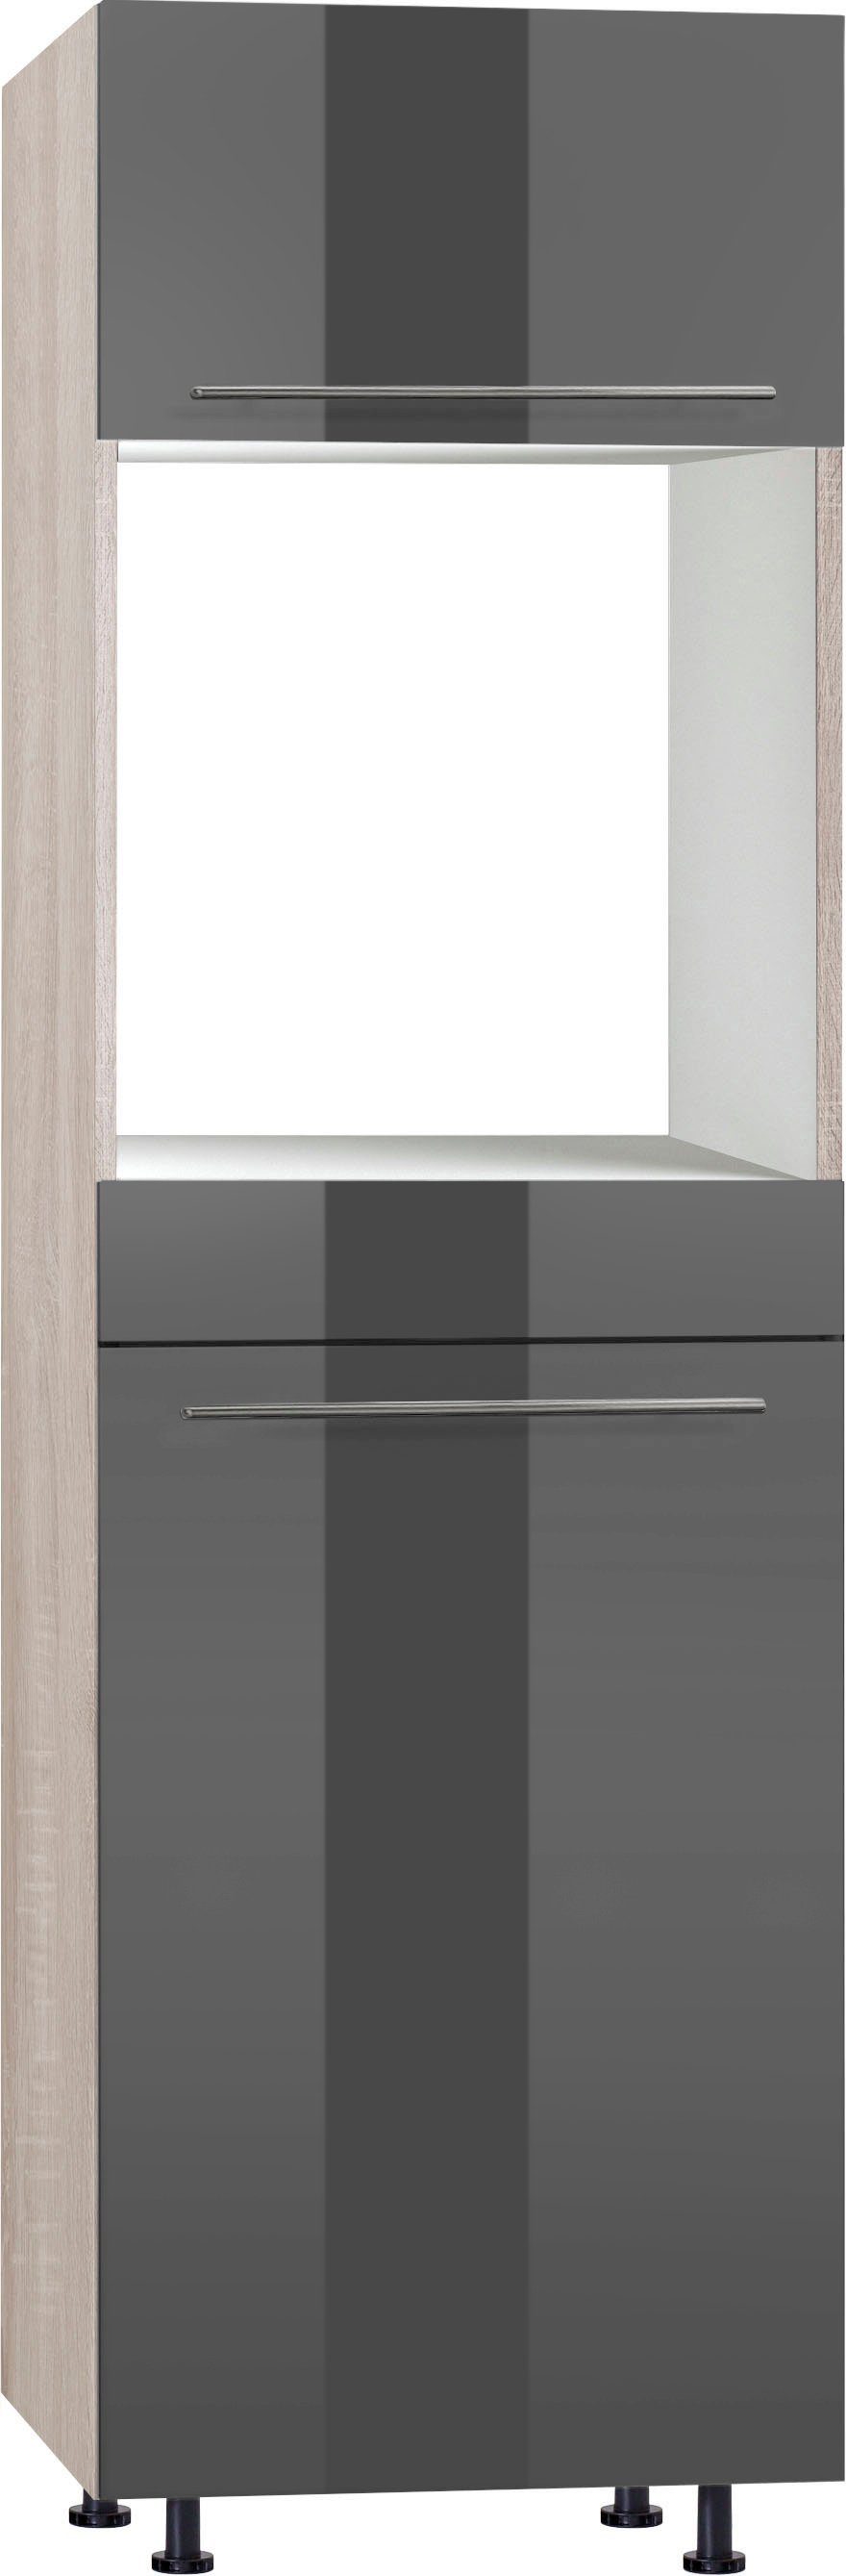 OPTIFIT Oven/koelkastombouw 60 cm breed, 212 cm hoog, met in hoogte verstelbare stelpoten, met metalen handgrepen